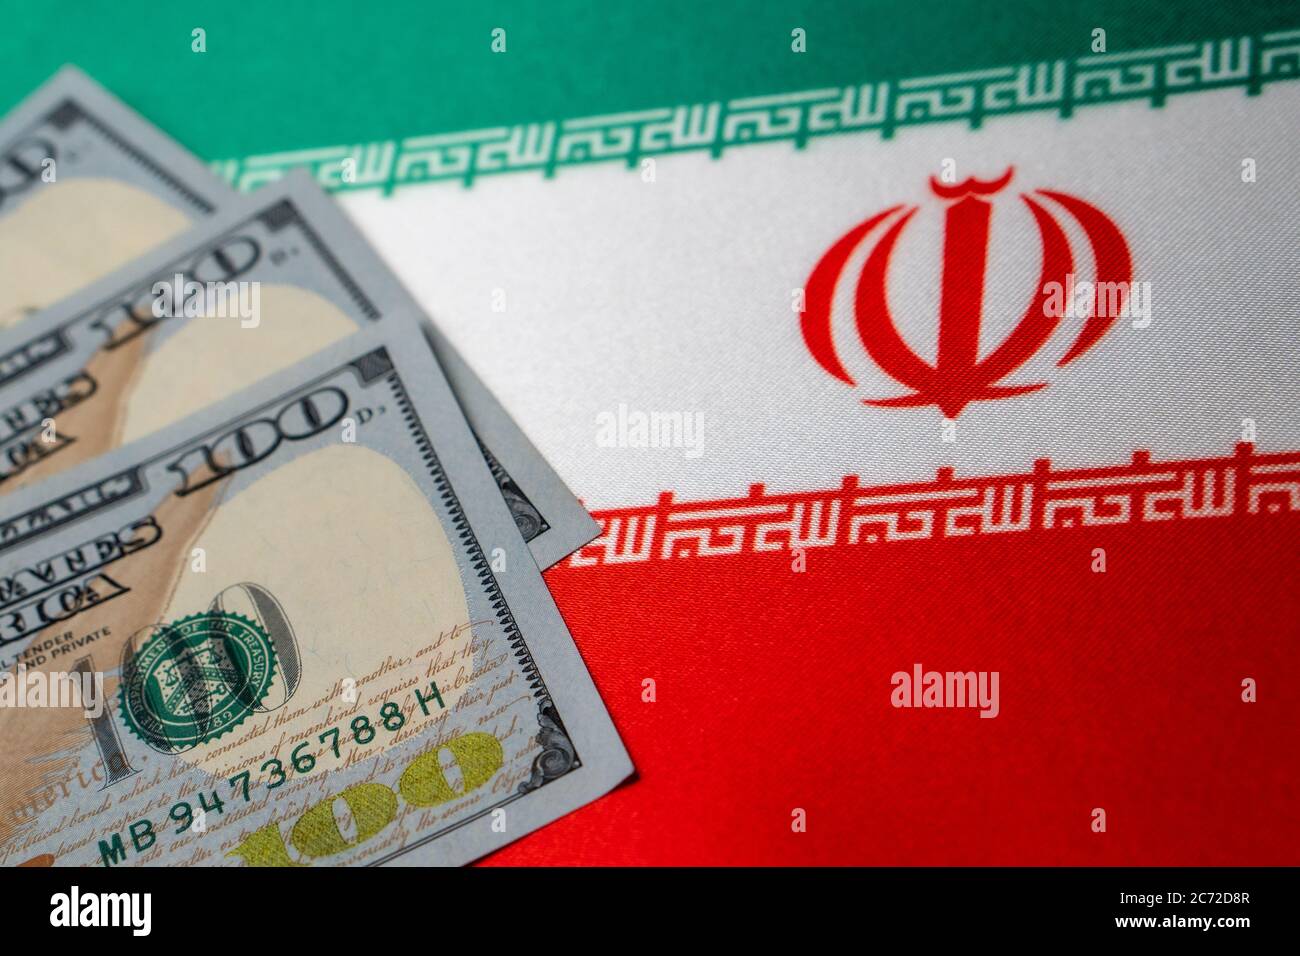 Le drapeau national de l'Iran et les billets en dollars. Concept commercial et financier, approche douce Banque D'Images